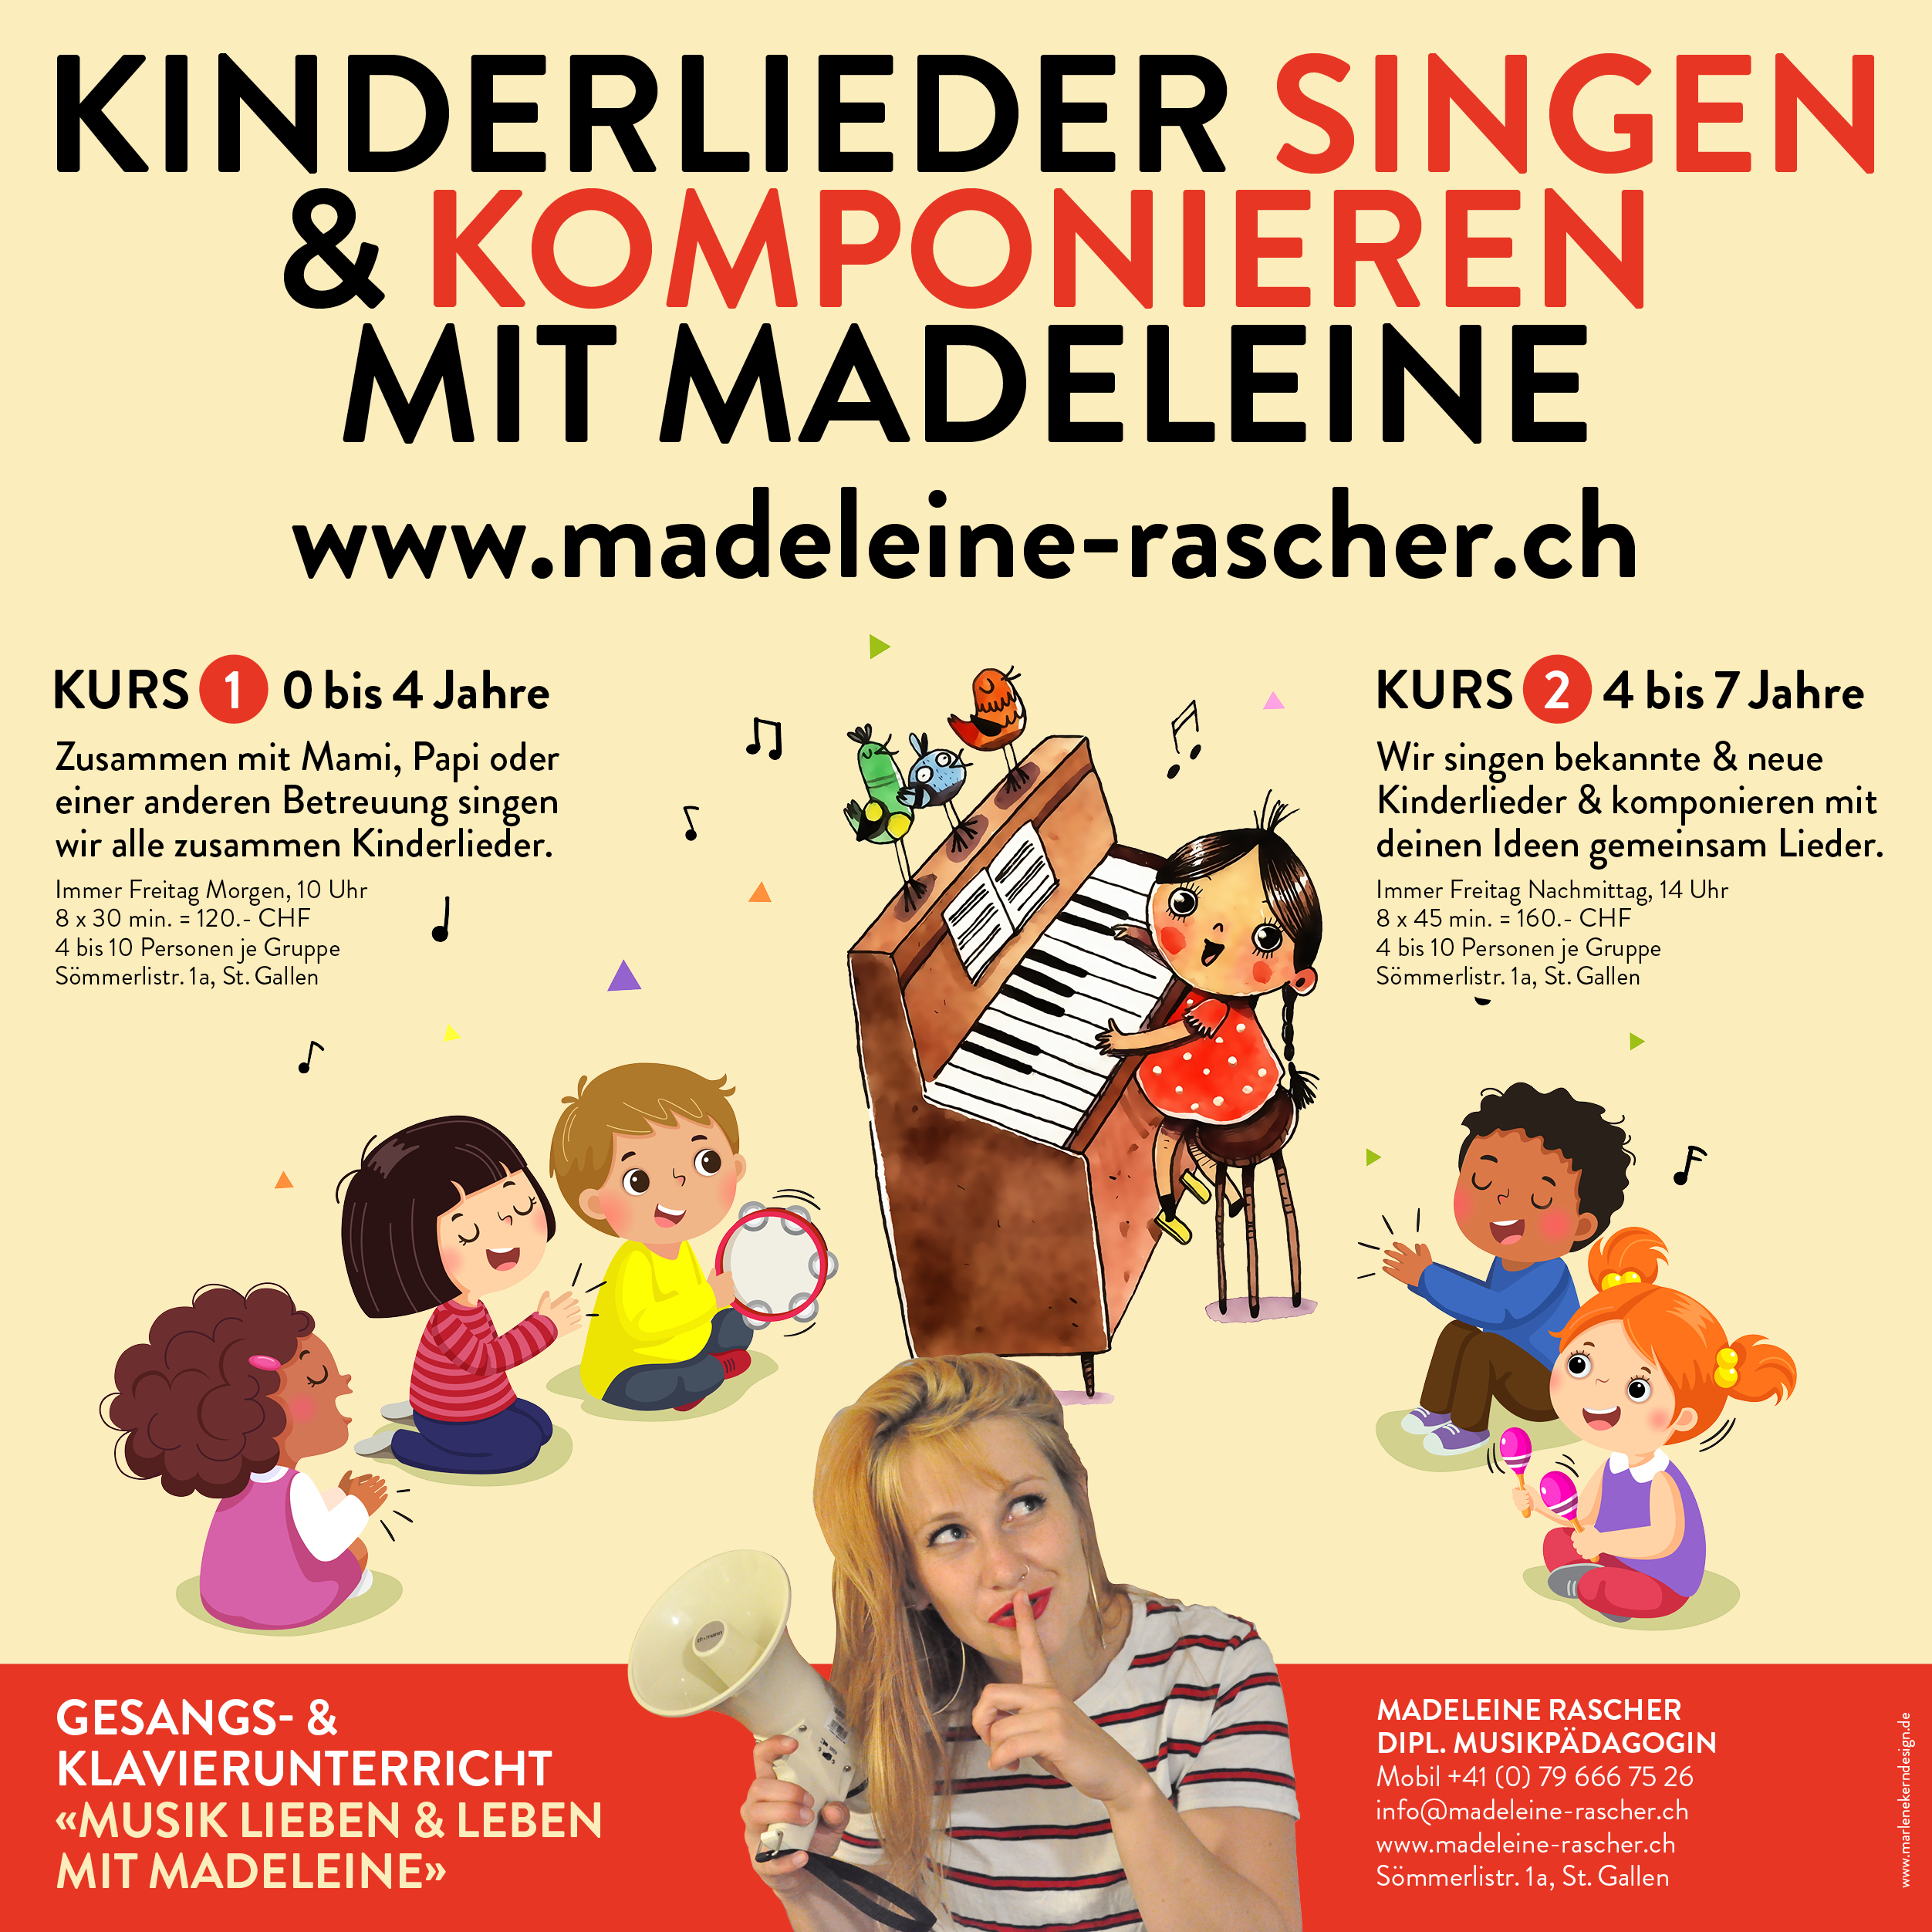 Kinderlieder singen & Komponieren mit Madeleine Rascher, St. Gallen. Sehen Sie die Angebote für Kinderlieder singen & komponieren von Madeleine Rascher in St. Gallen.